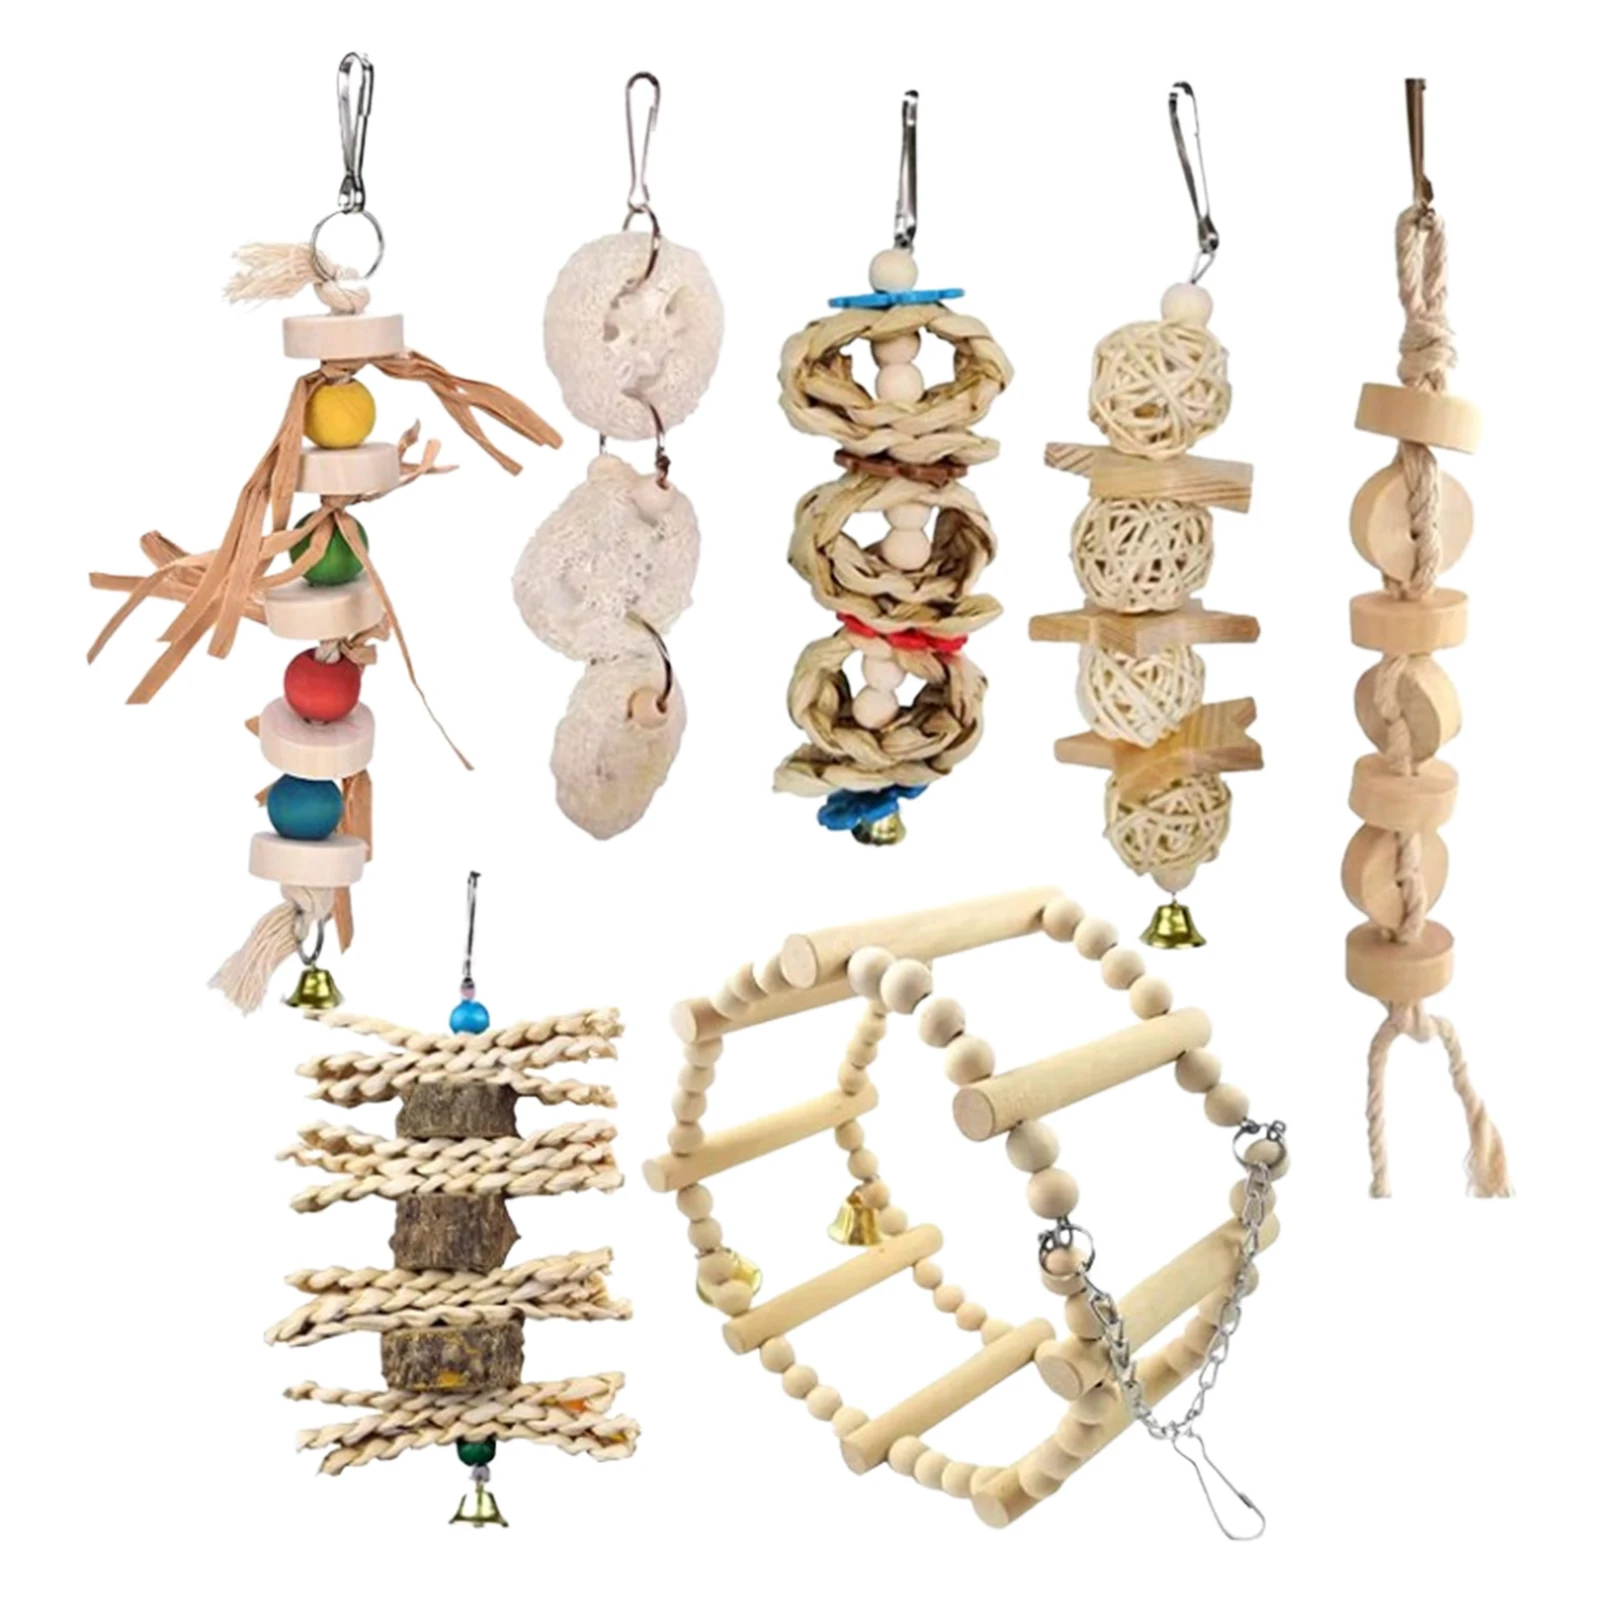 

Искусственные деревянные игрушки для птиц, Маленькие искусственные игрушки для тараканов, наконечники, попугаи, любимые птицы, избавляют о...